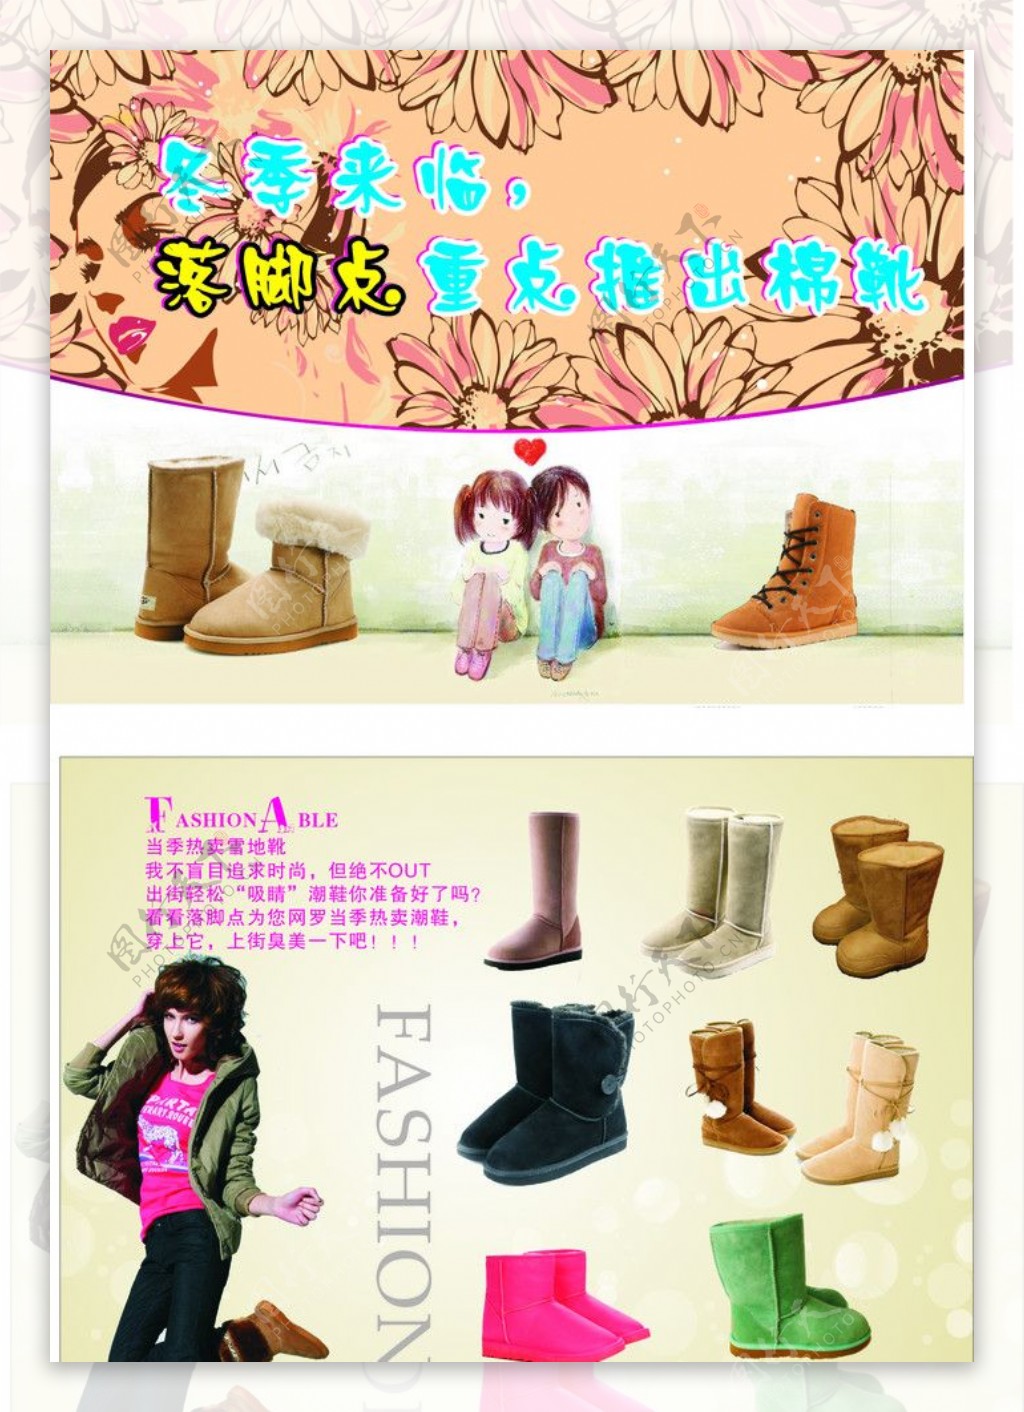 新款时尚雪地靴宣传单图片